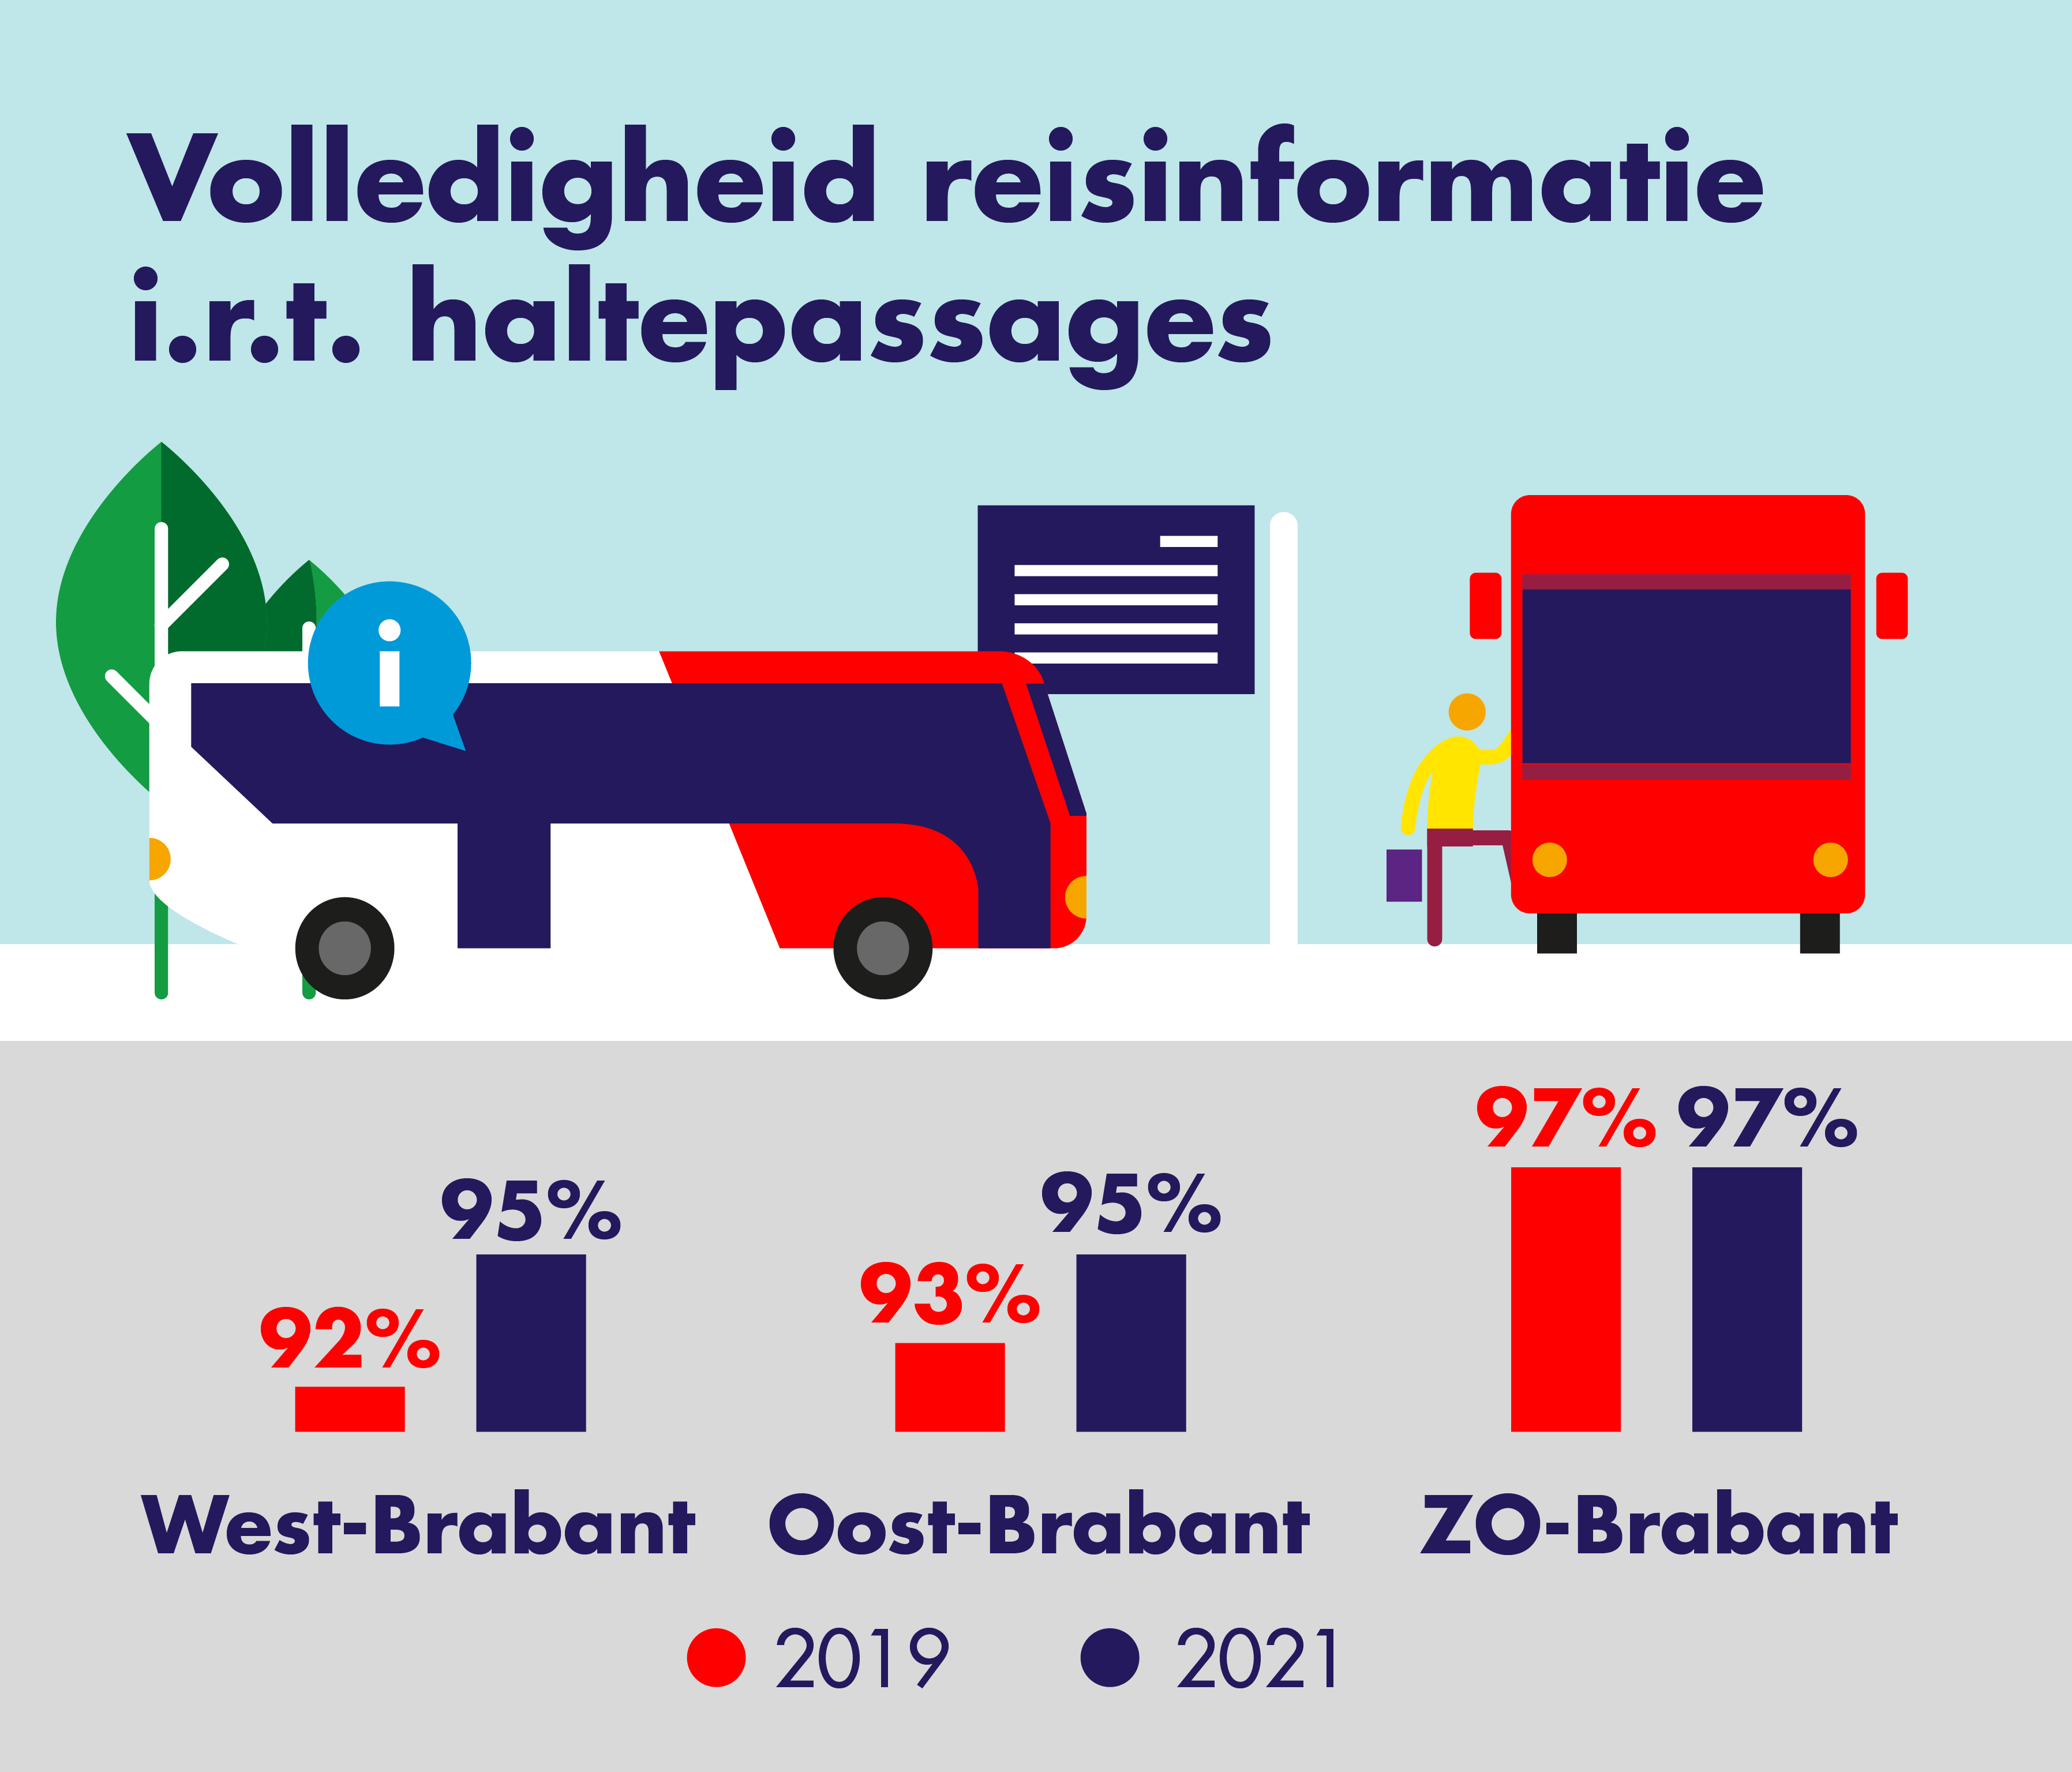 Op deze afbeelding is de volledigheid van de reisinformatie in relatie tot 
                    haltepassagiers weergegeven. Er wordt een vergelijking gemaakt tussen 2019 en 2021.